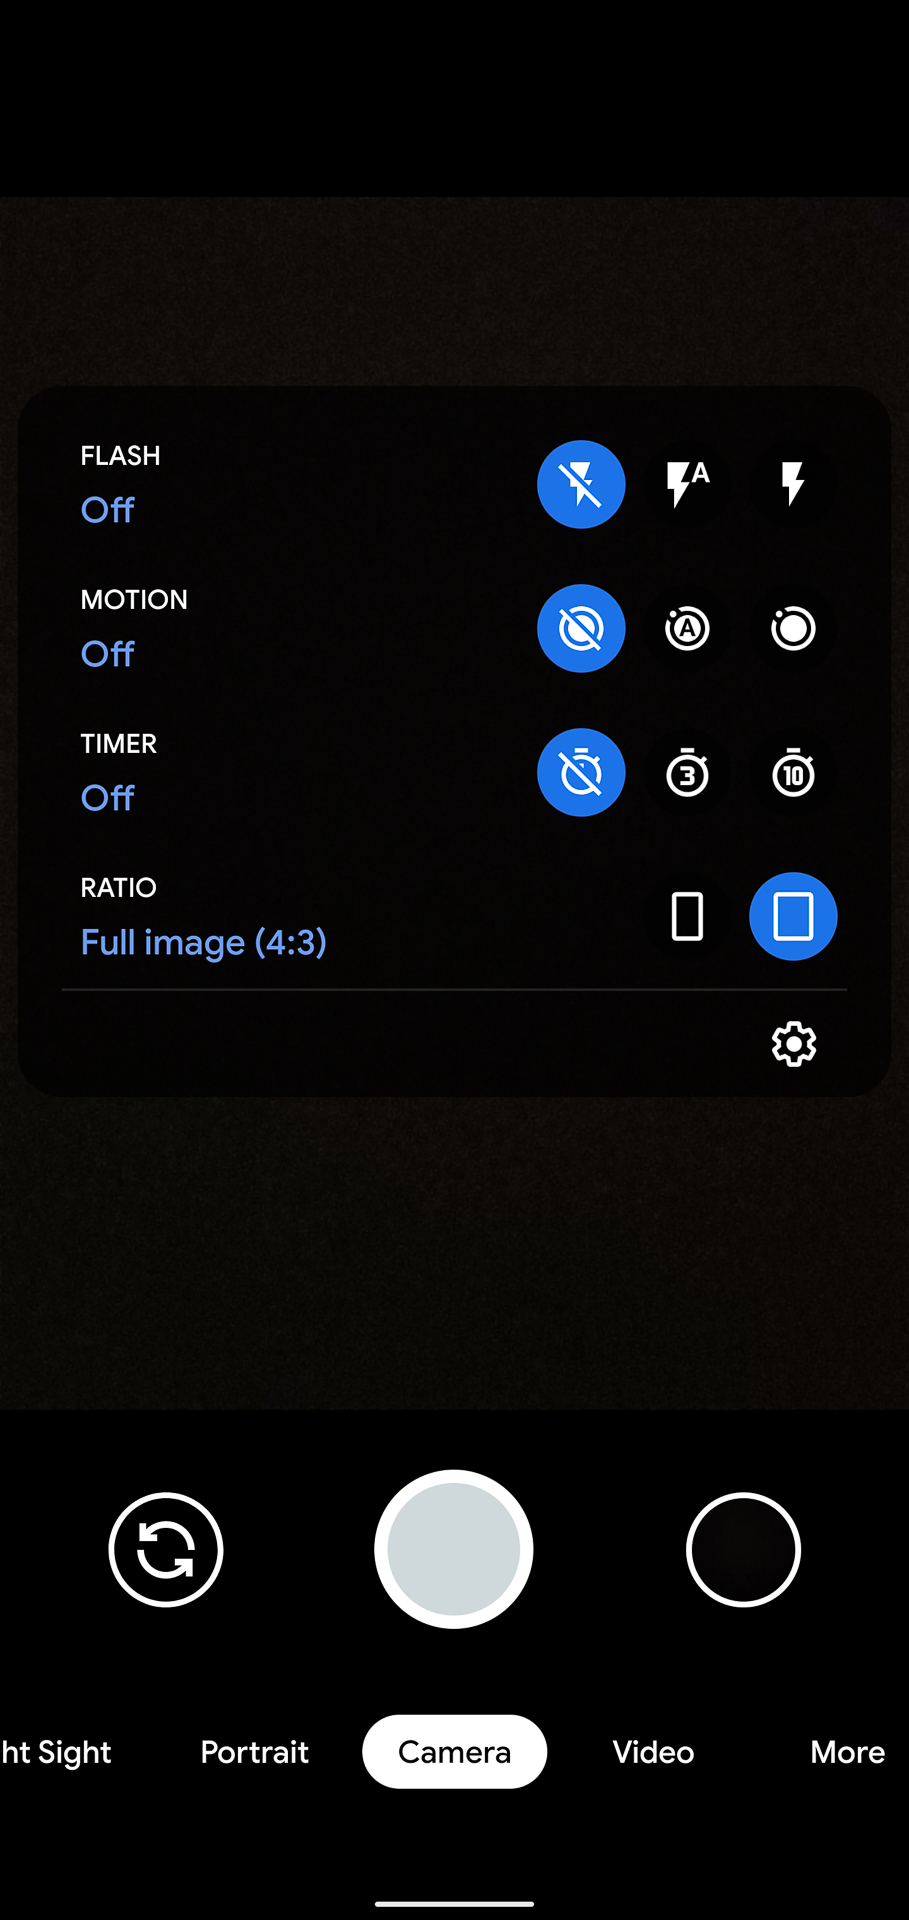 Google Pixel 4 XL camera app options